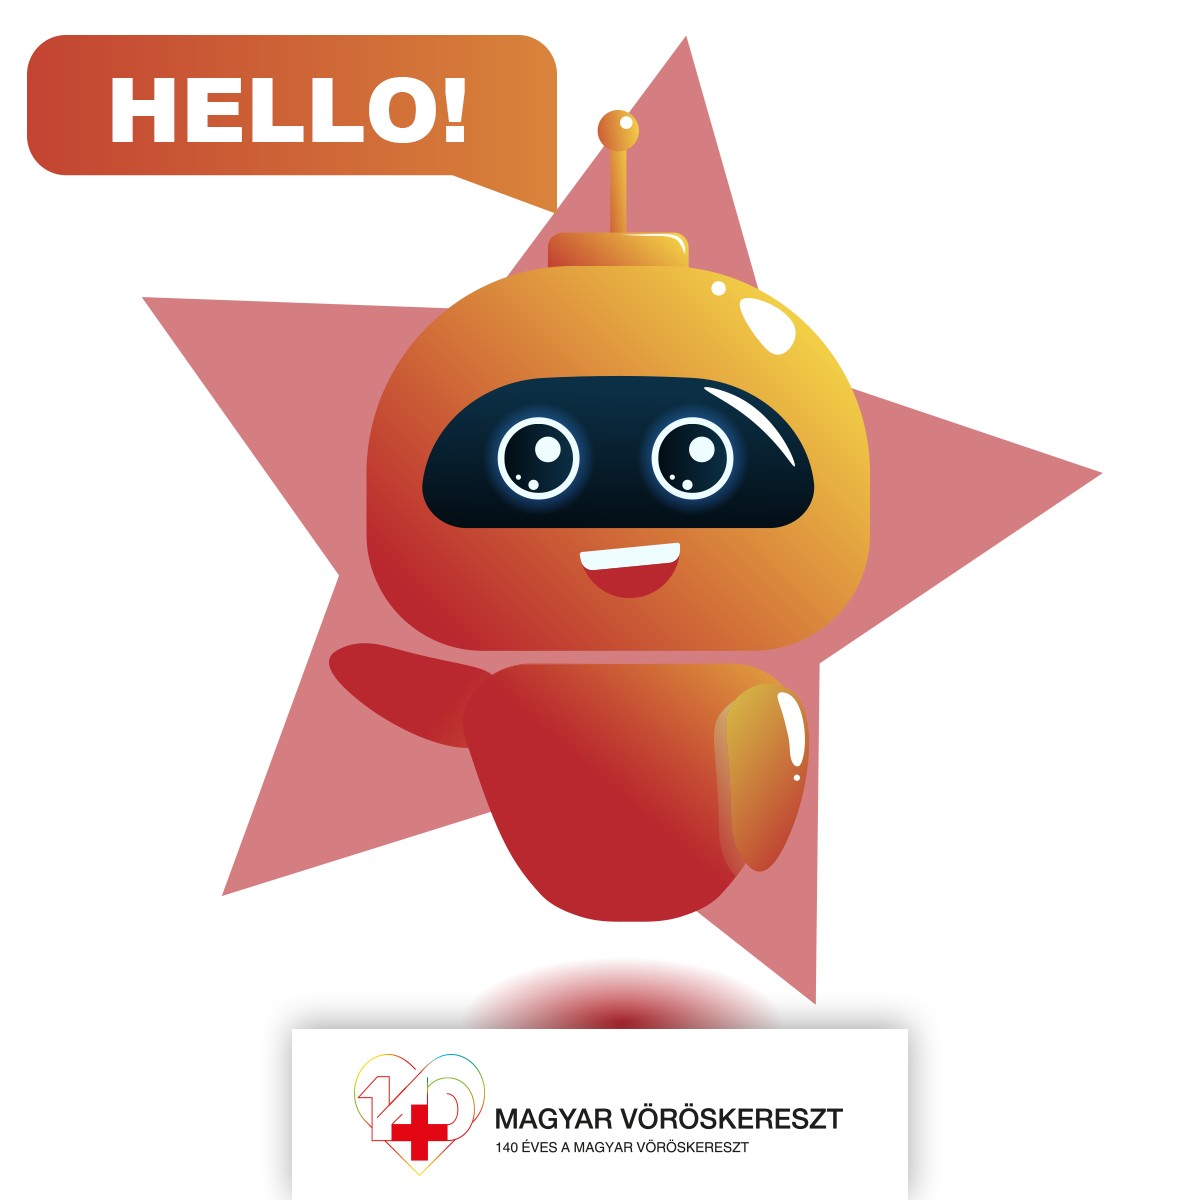 Chatbot funkcióval bővül a Magyar Vöröskereszt Facebook oldala